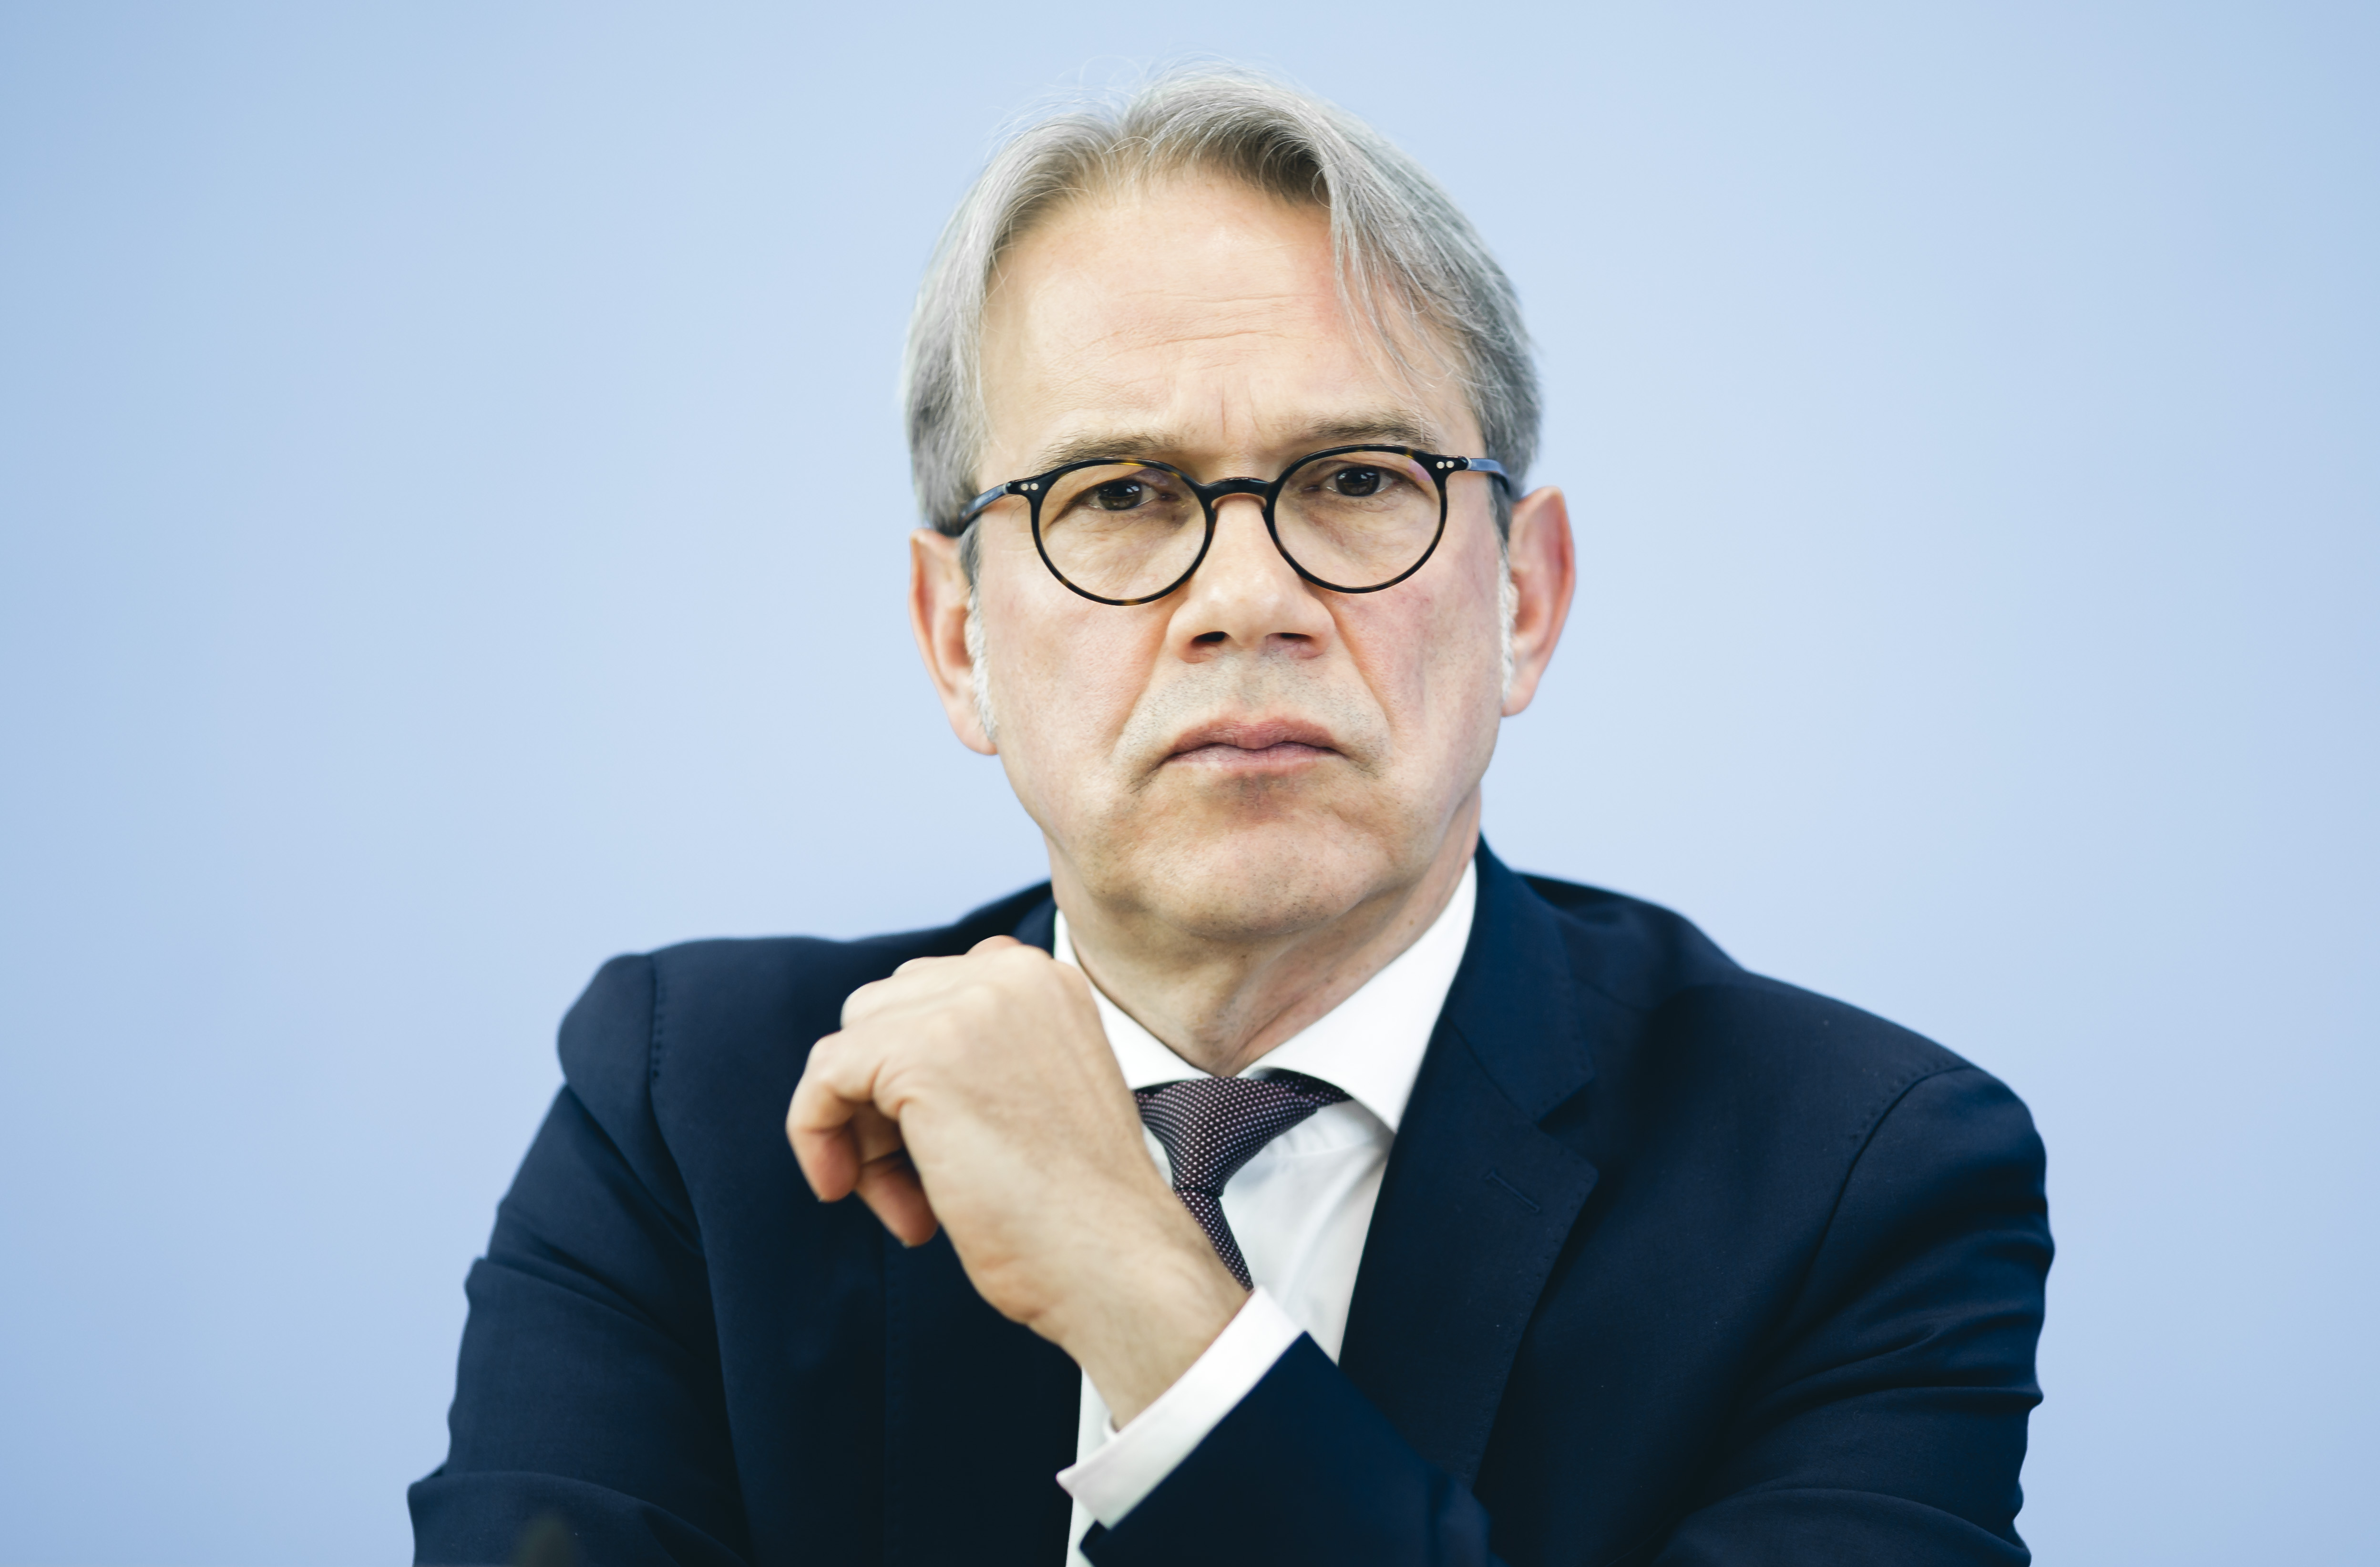 Georg Maier ist Innenminister und SPD-Landesvorsitzender in Thüringen.